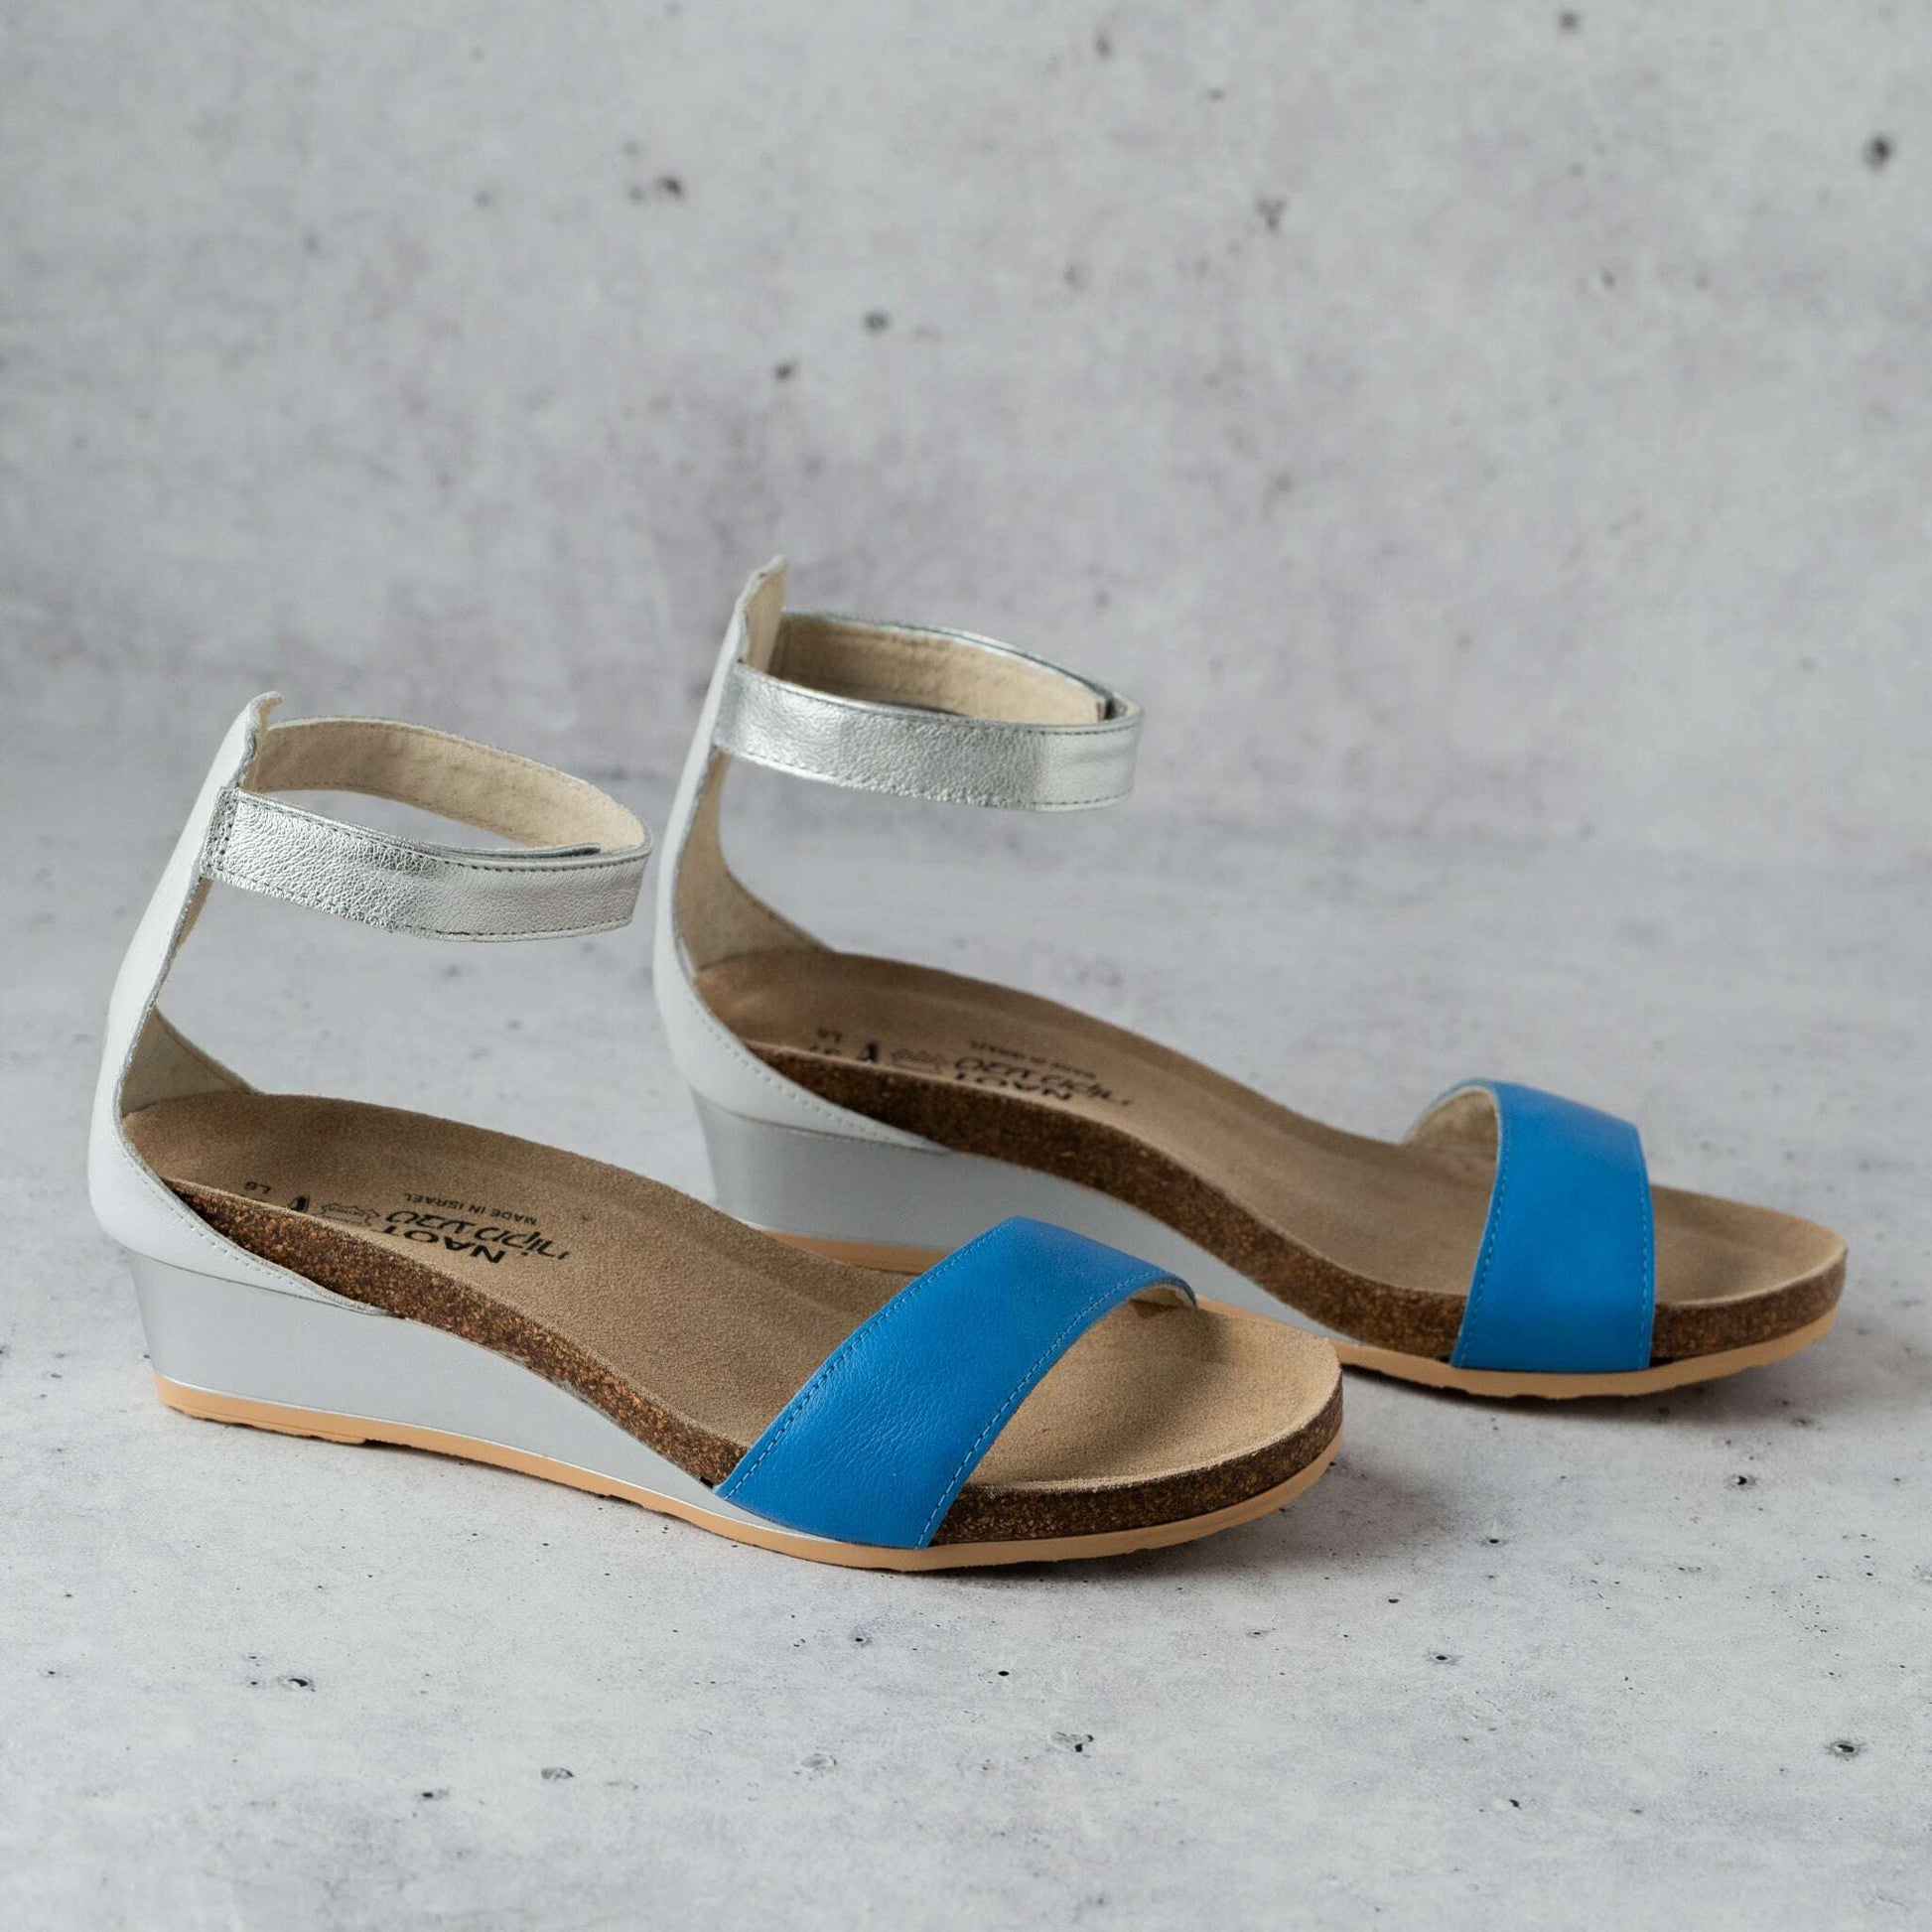 NAOT - Pixie - Sapphire Blue, Sandals, Yaleet, Plum Bottom